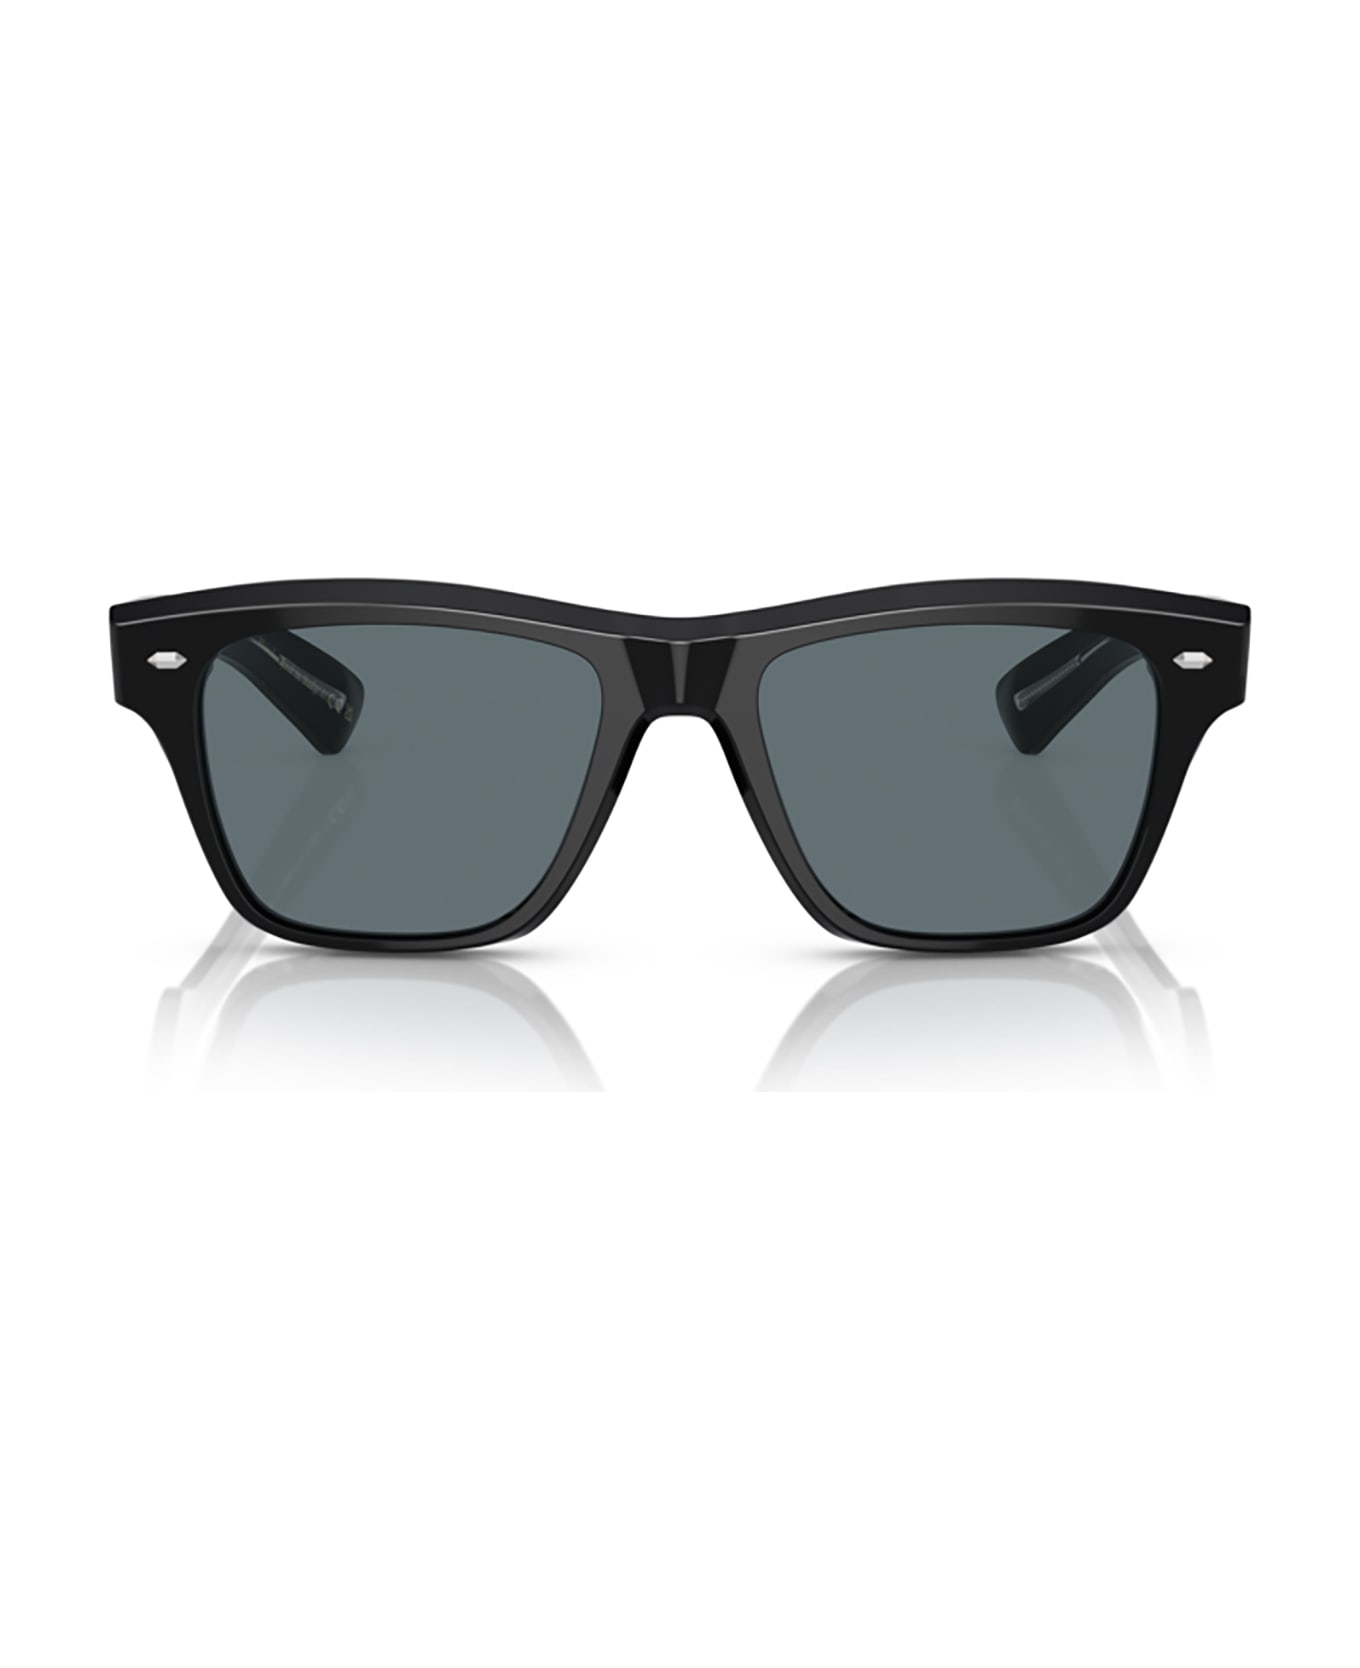 Oliver Peoples Ov5522su Black Sunglasses - Black